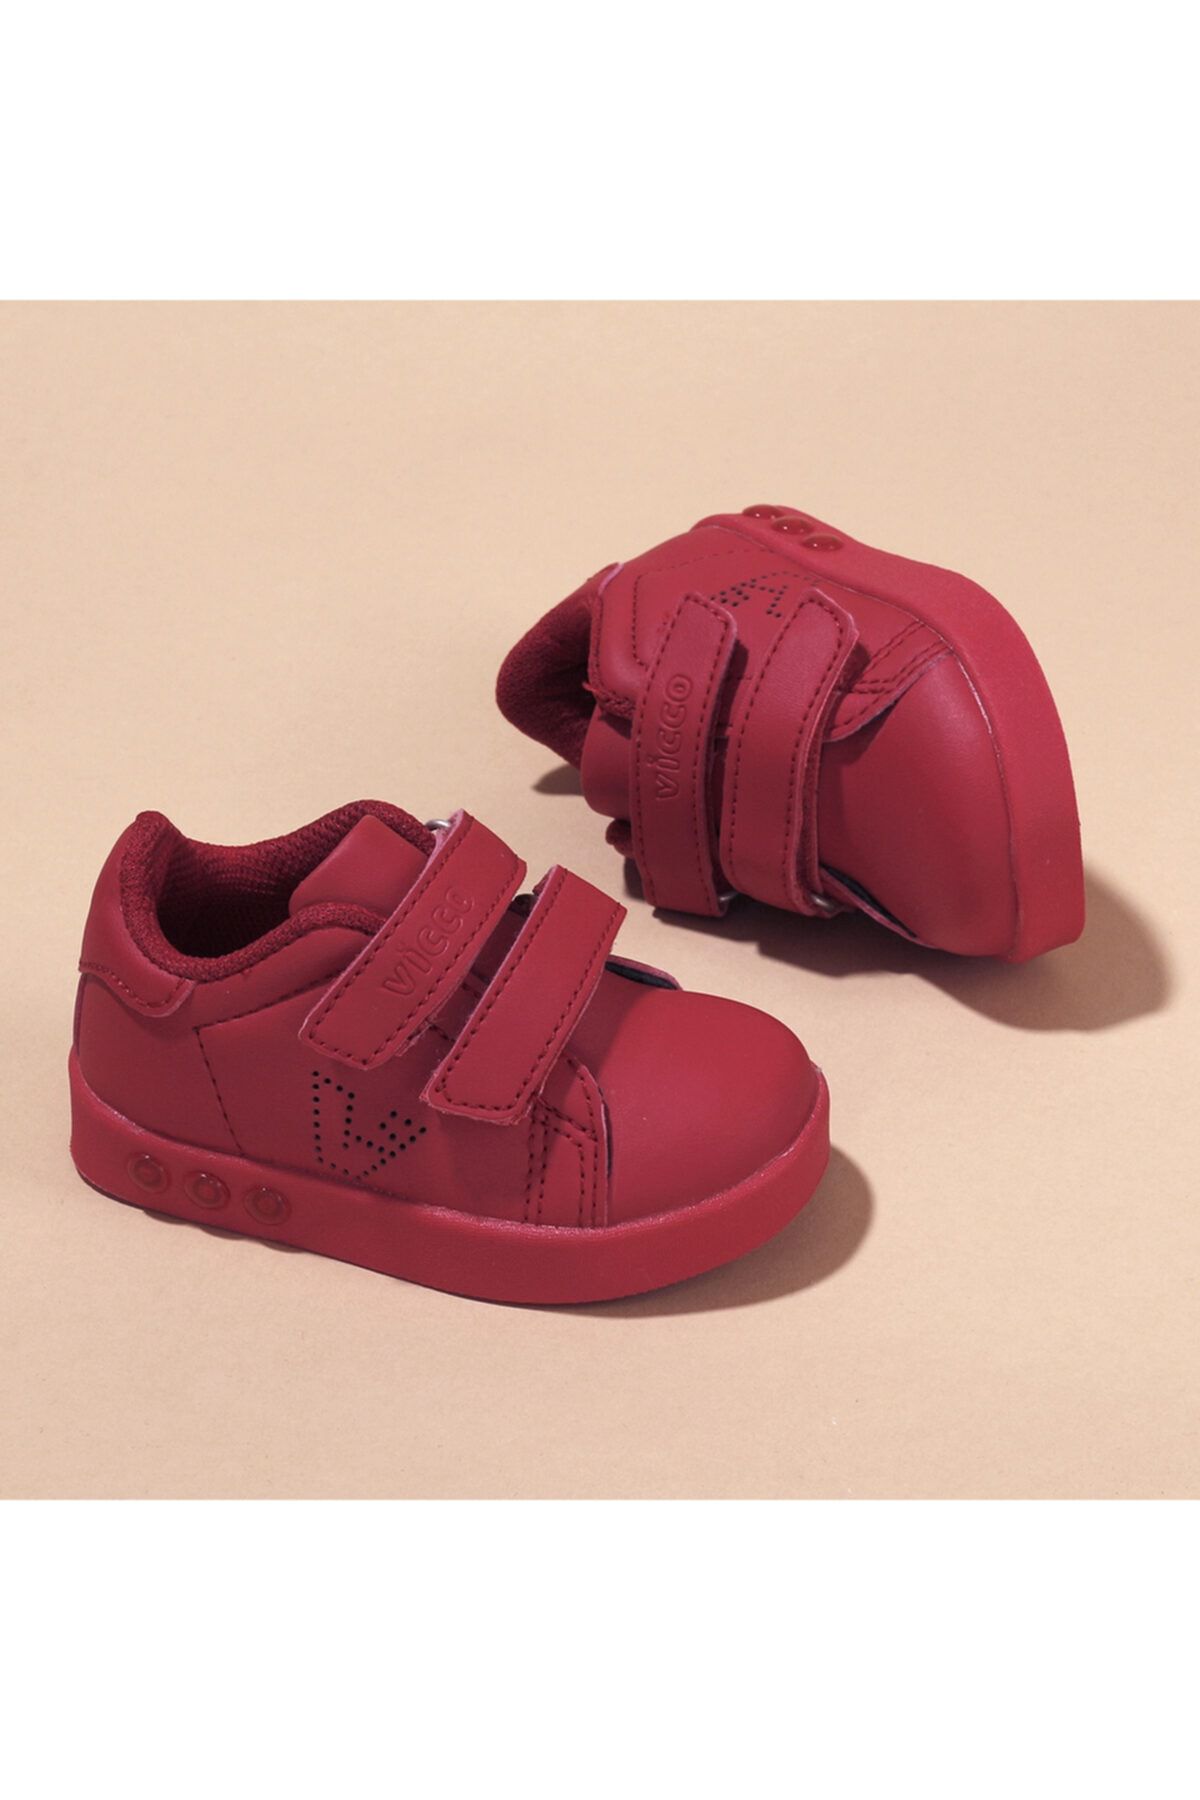 Vicco Erkek Çocuk Kırmızı Işıklı Spor Ayakkabı